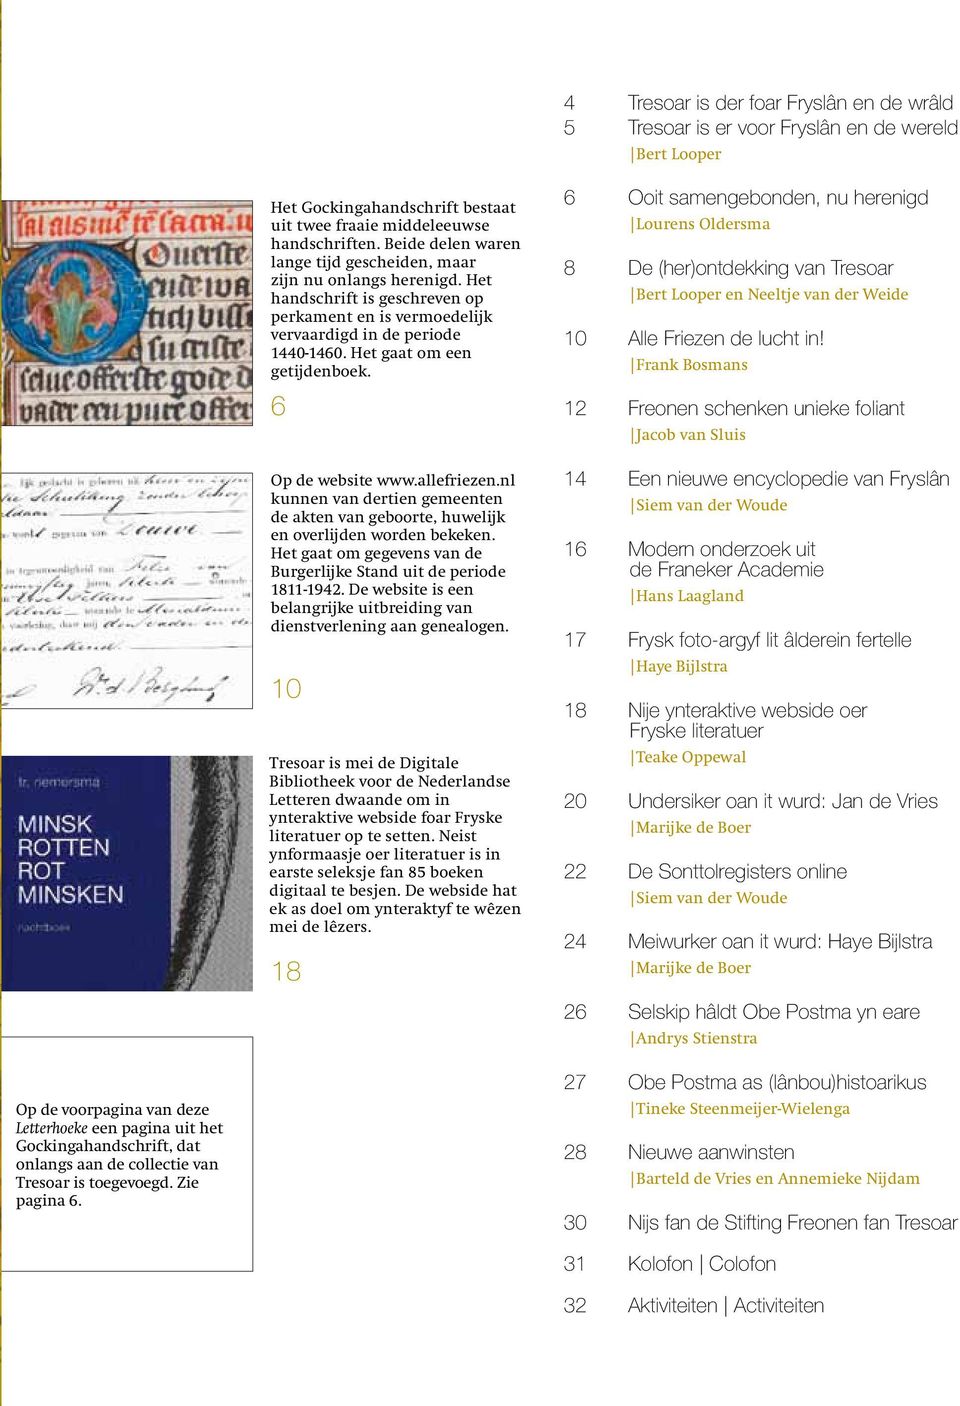 6 Op de website www.allefriezen.nl kunnen van dertien gemeenten de akten van geboorte, huwelijk en overlijden worden bekeken. Het gaat om gegevens van de Burgerlijke Stand uit de periode 1811-1942.